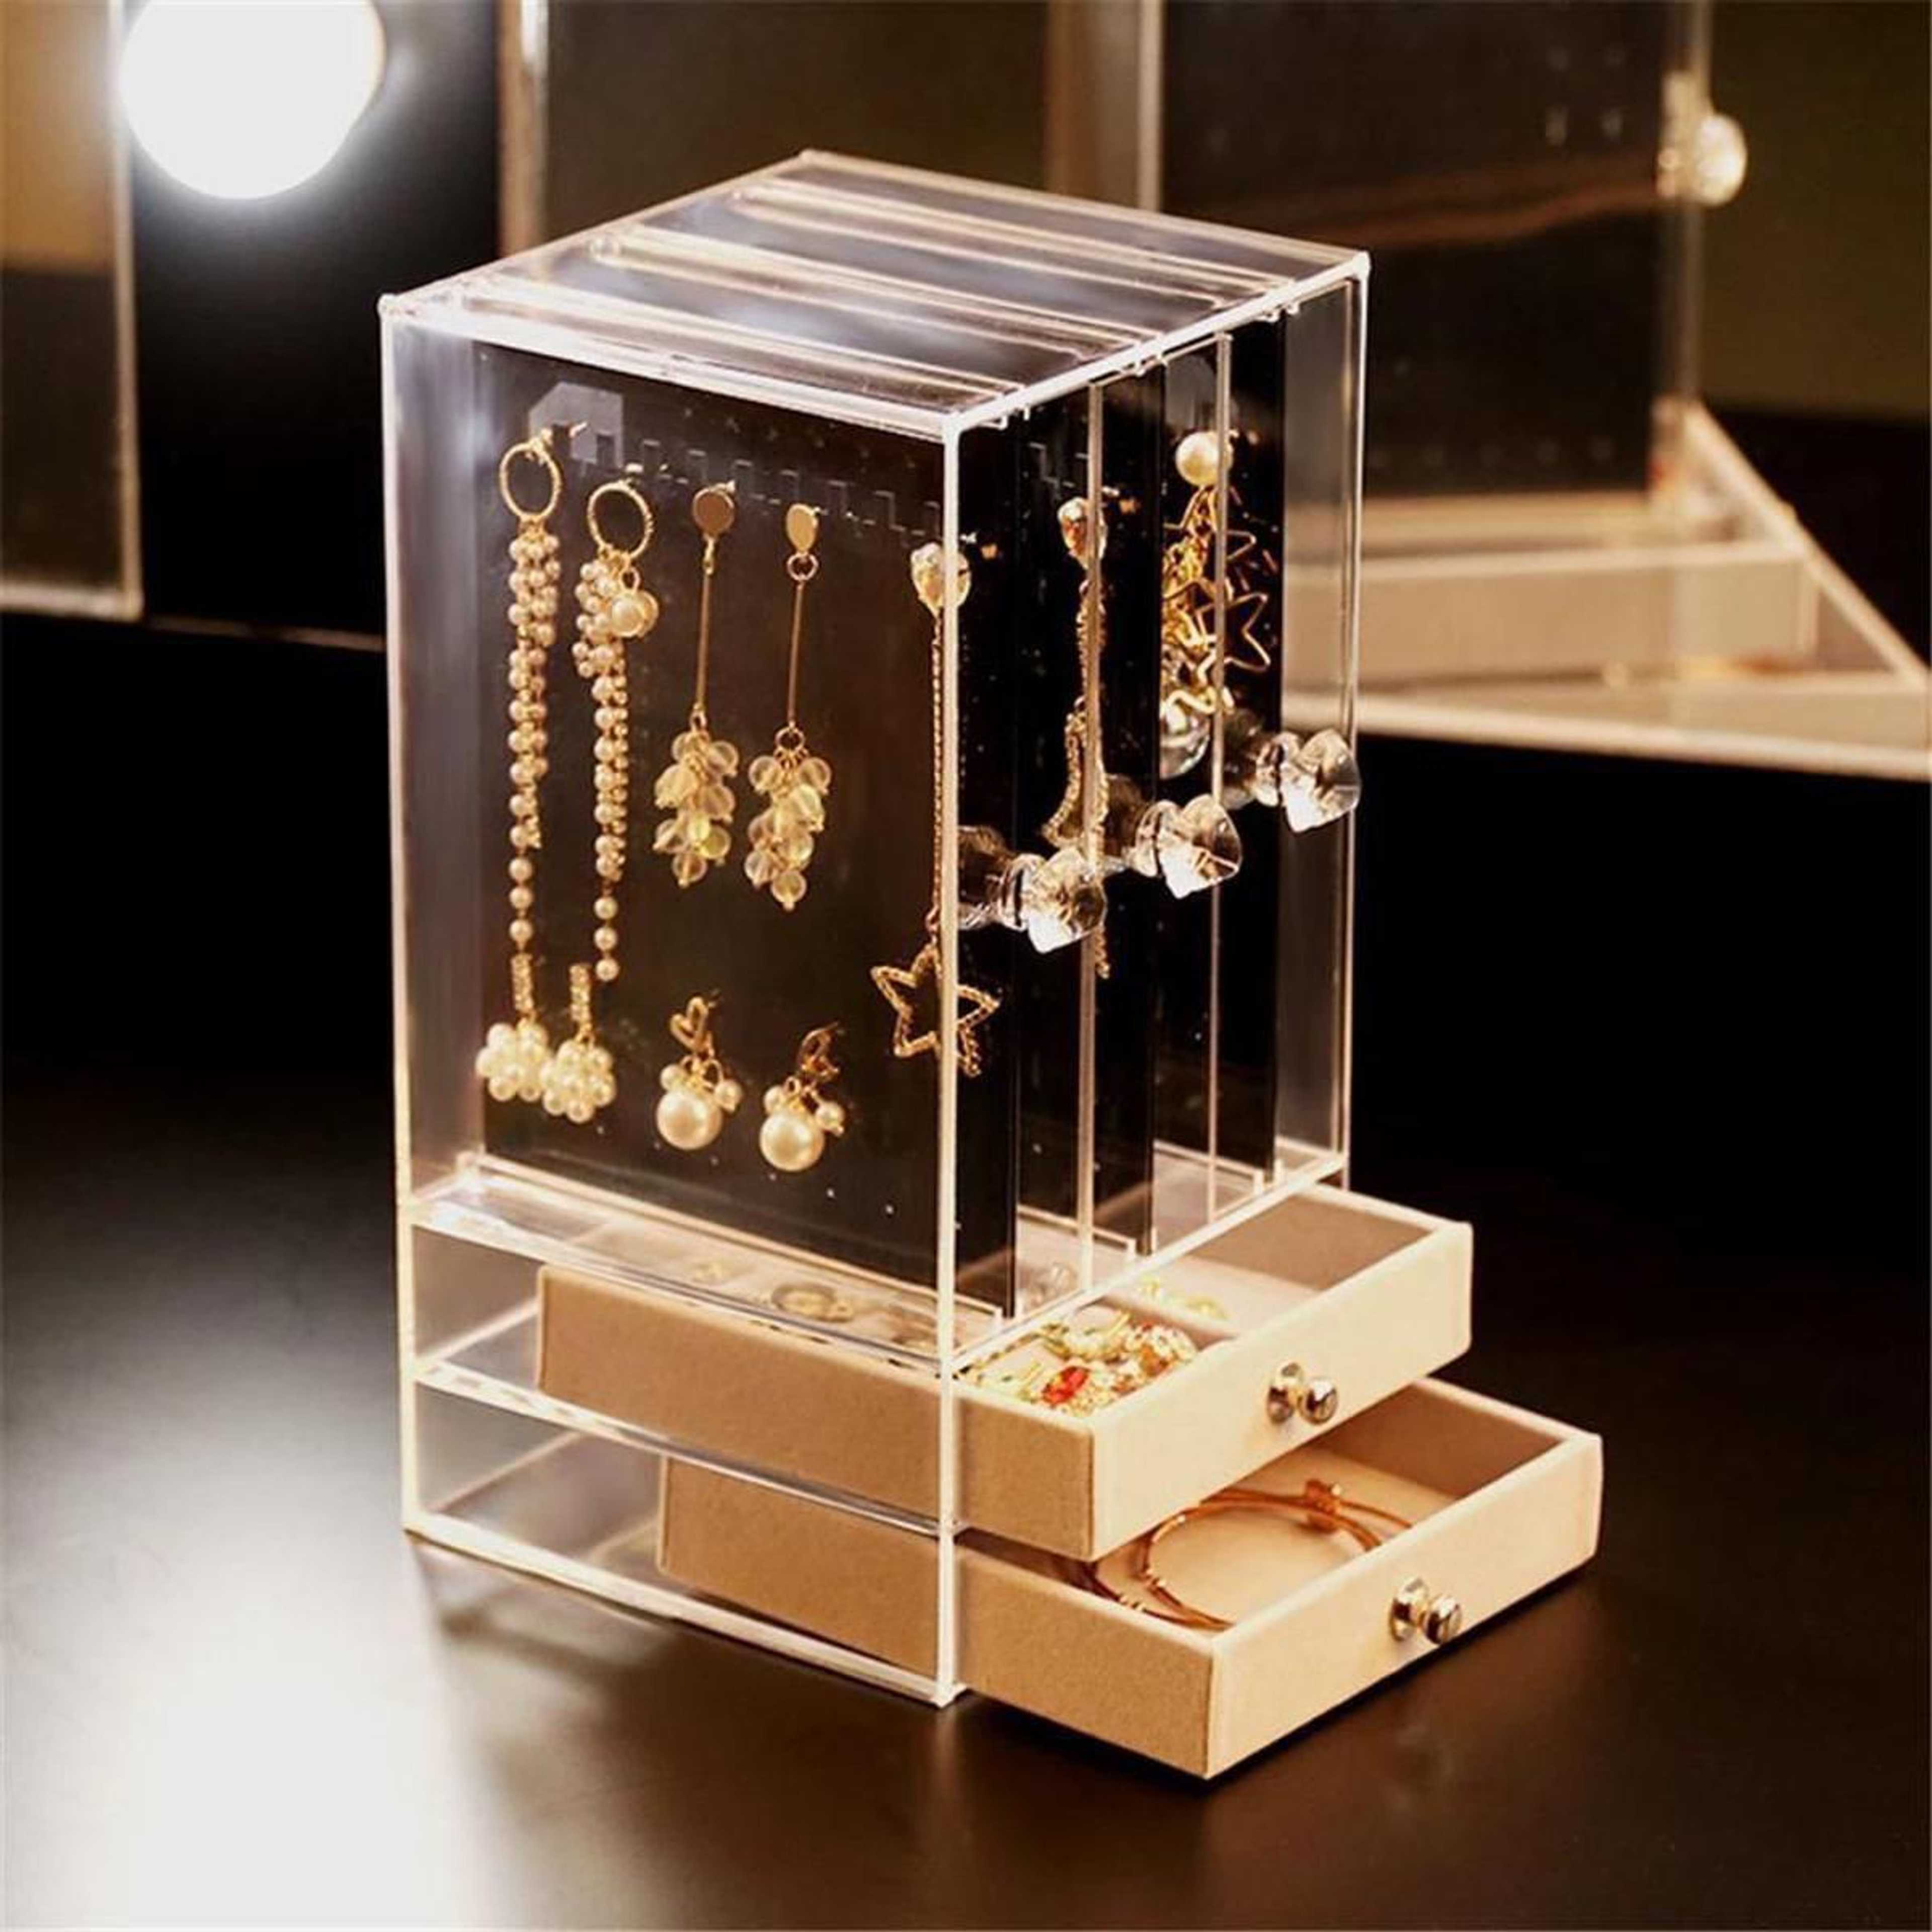 Transparent Acrylic Jewelry Storage Box Case Jewelry Organizer For Women's Necklace Ring Display storage organizer